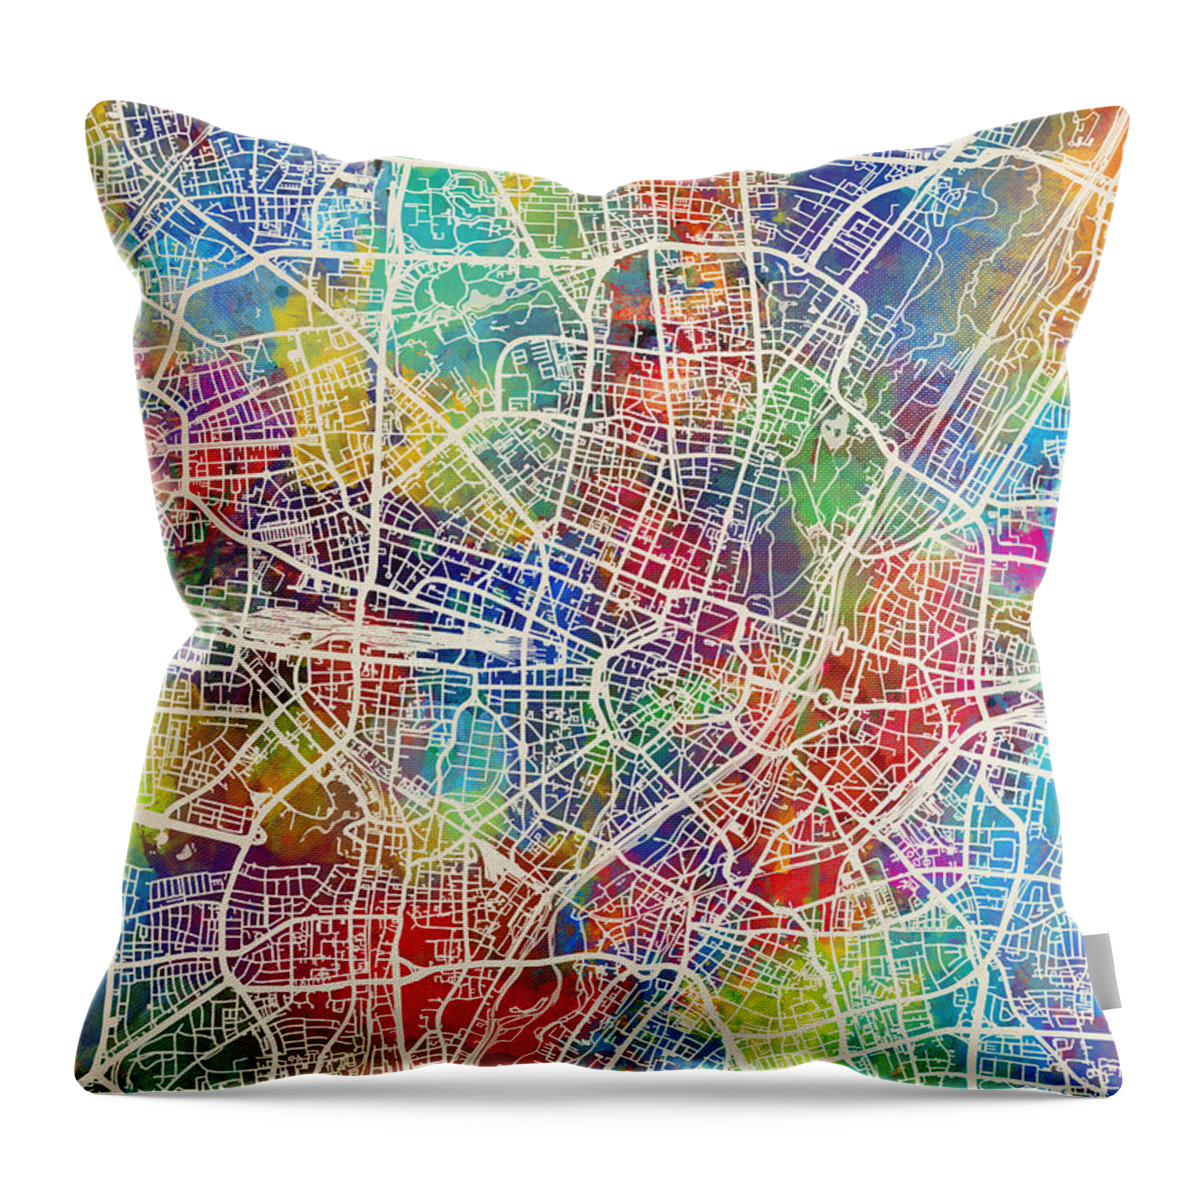 Munich Throw Pillow featuring the digital art Munich Germany City Map by Michael Tompsett